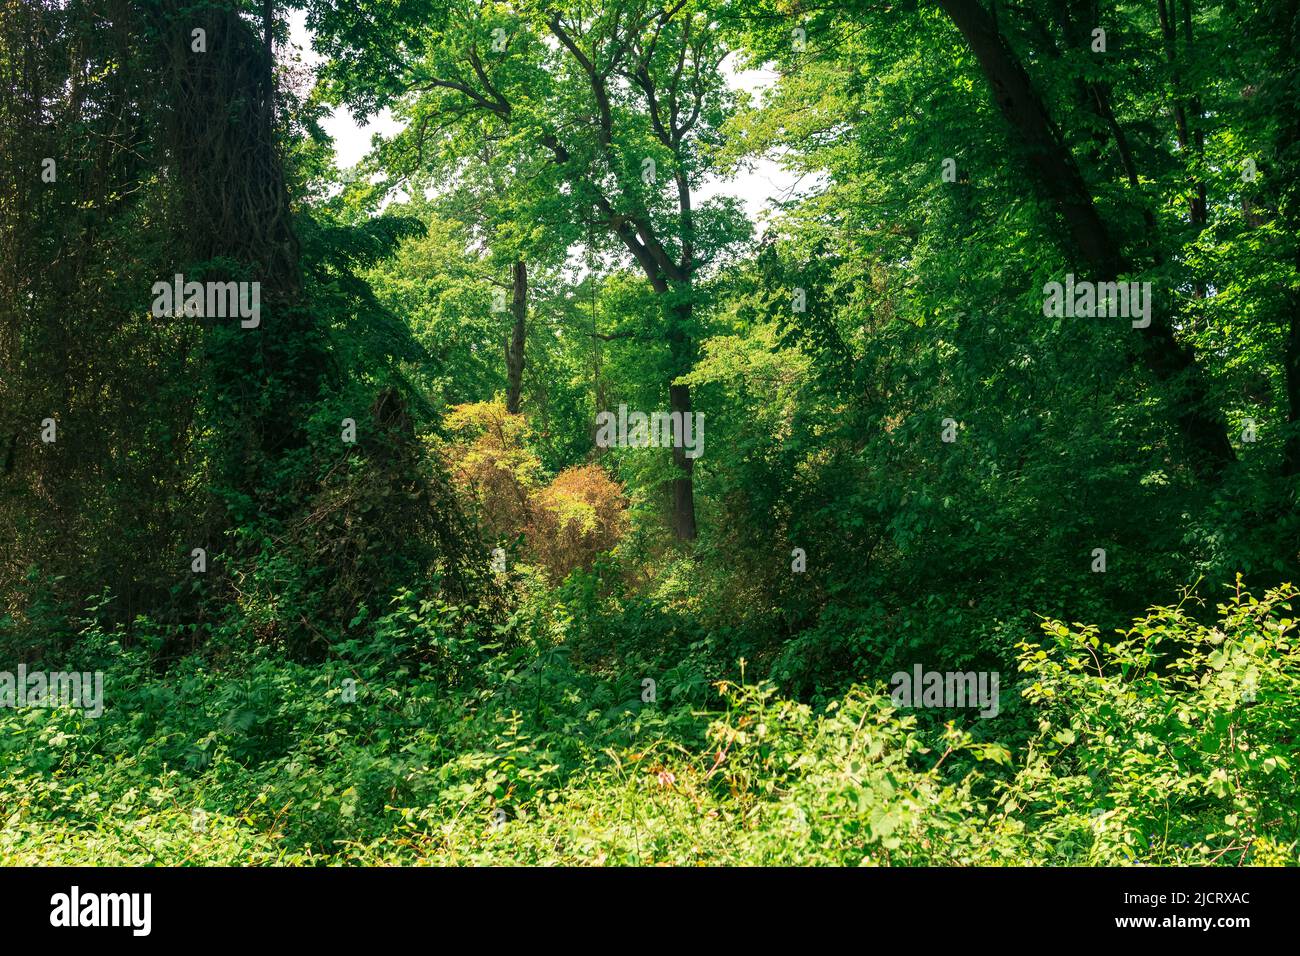 paesaggio forestale, addensati di alberi intrecciati di liane, in una foresta subtropicale decidua Foto Stock